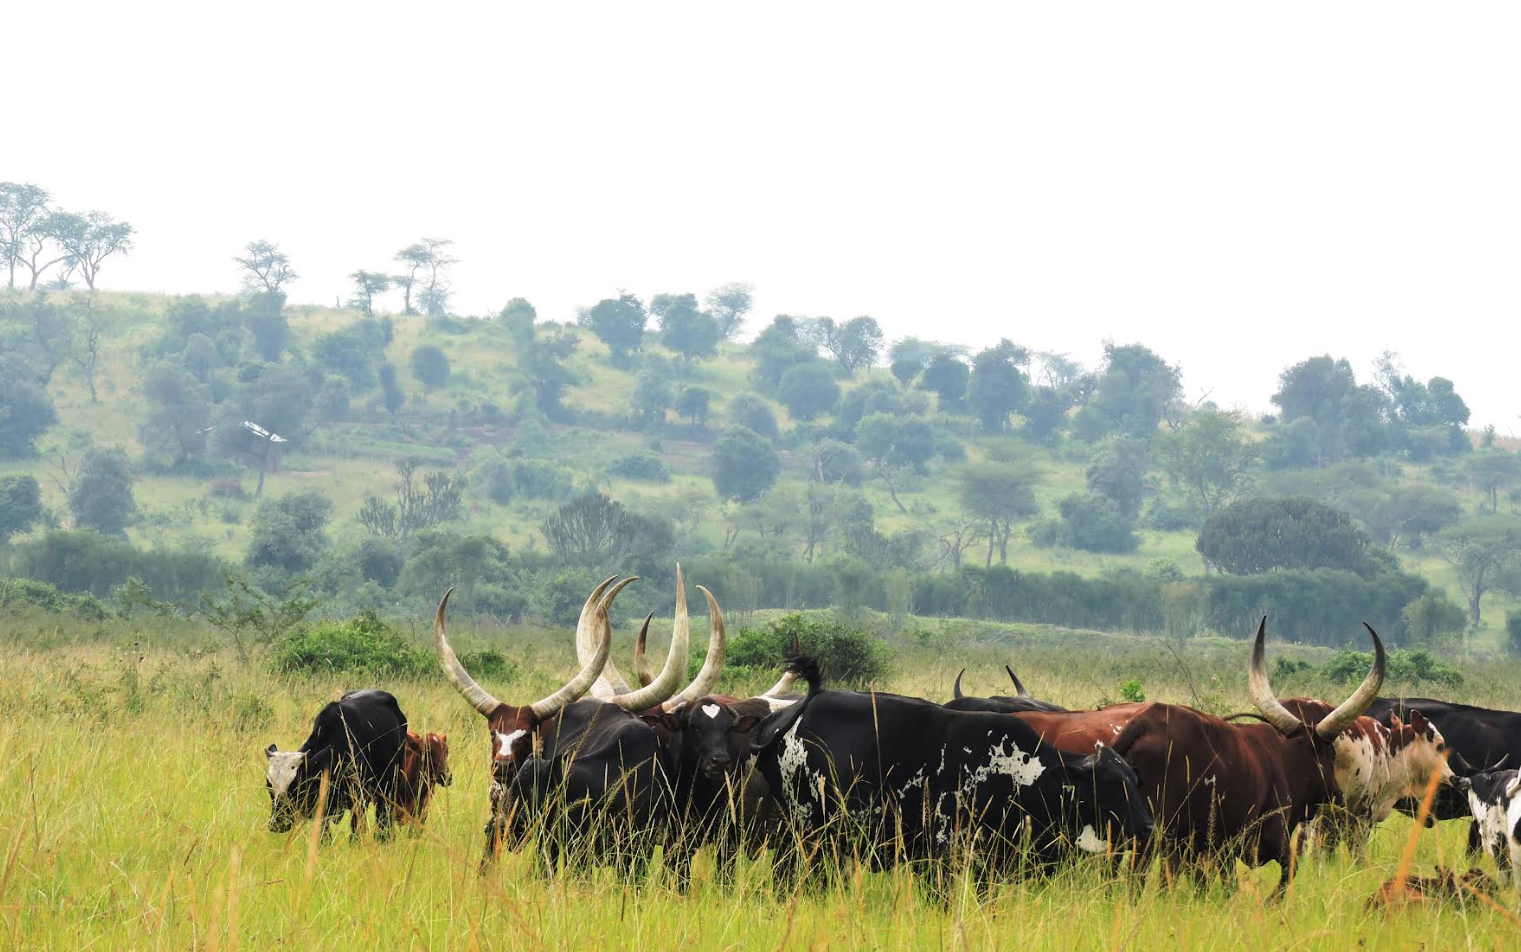 African livestock groen braakland